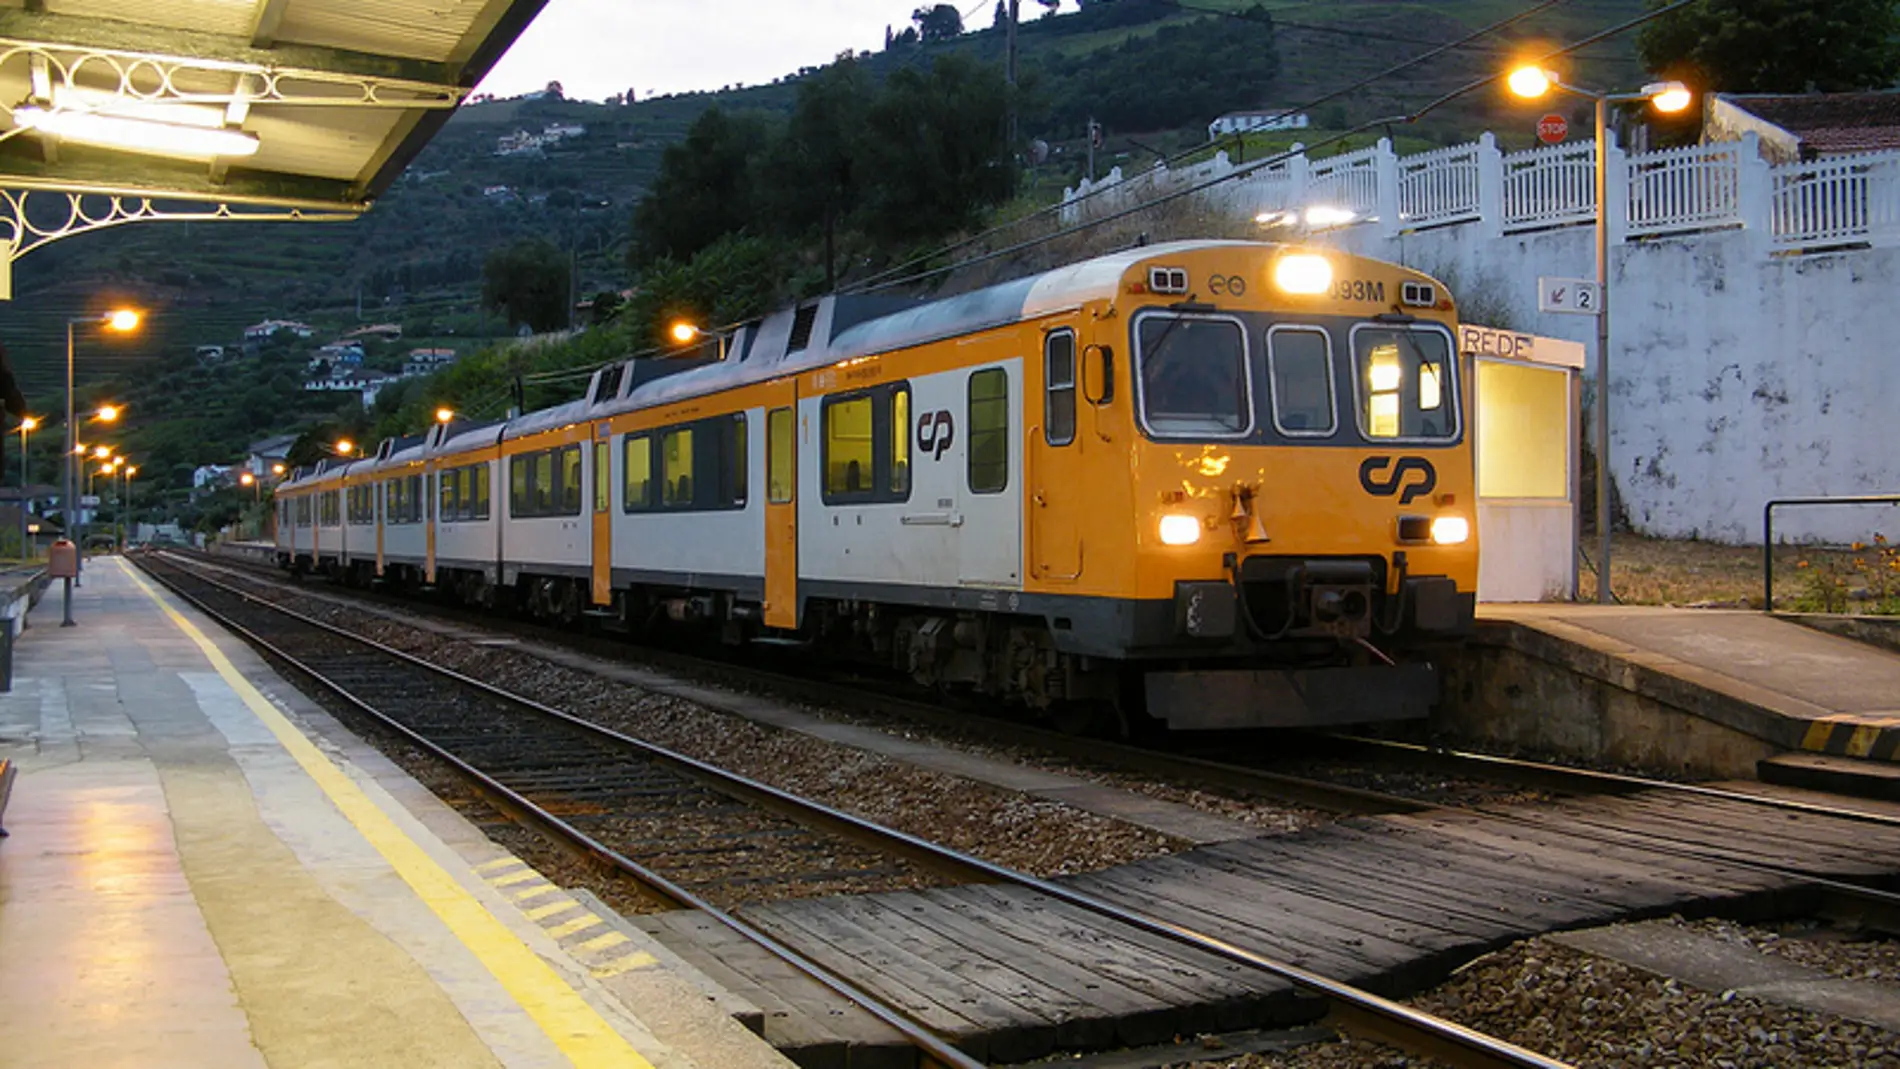 Comboios-Portugal-Vigo.jpg